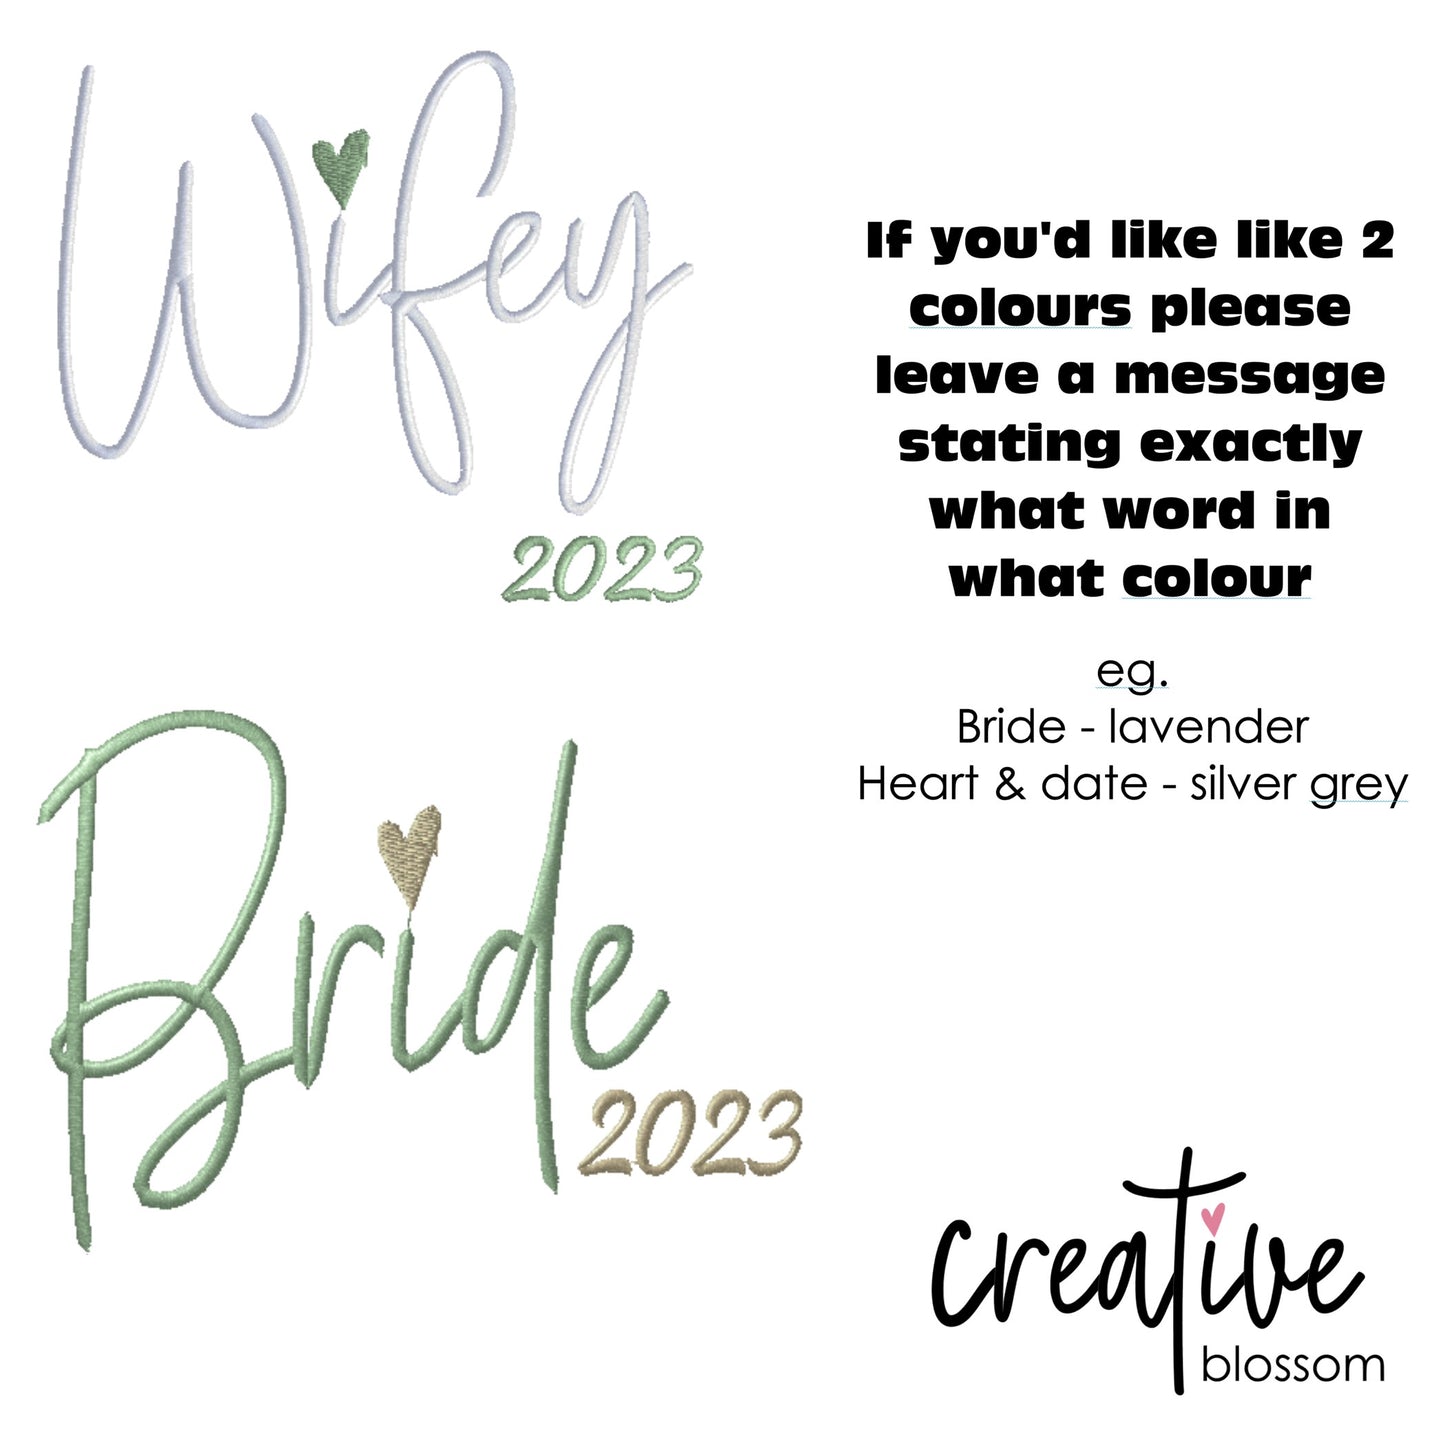 Bridal Jacket - Wifey/Bride year